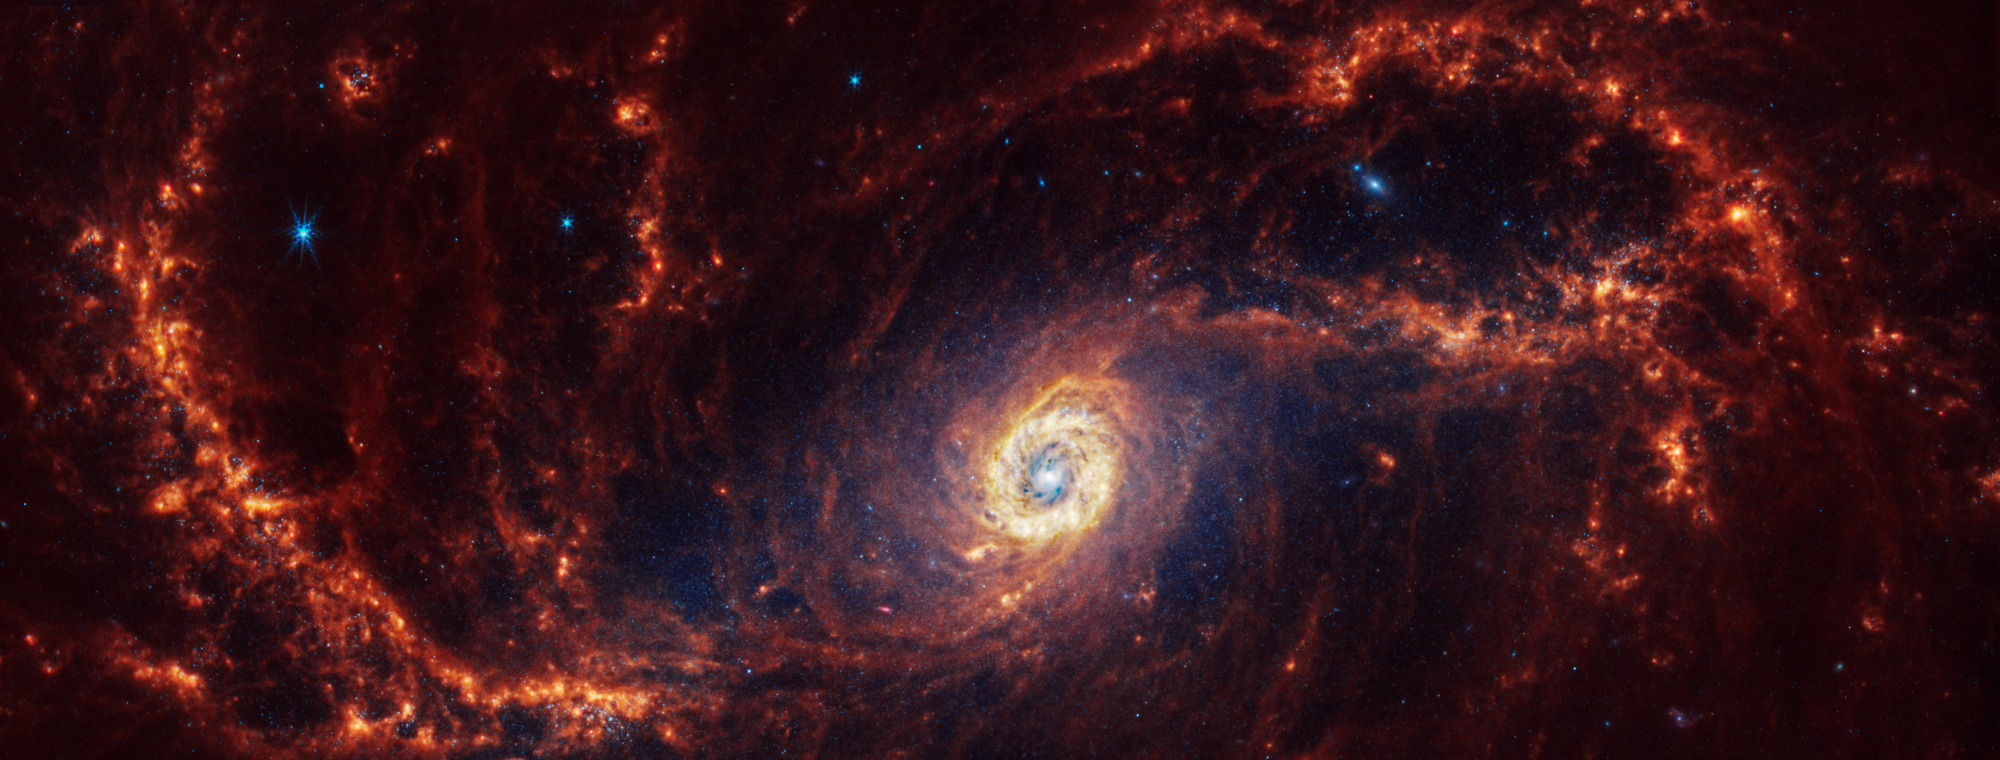 La galaxia espiral NGC 1672, situada a 60 millones de años luz en la constelación de Dorado, muestra su esplendor con brazos espirales bien definidos y una región central brillante.